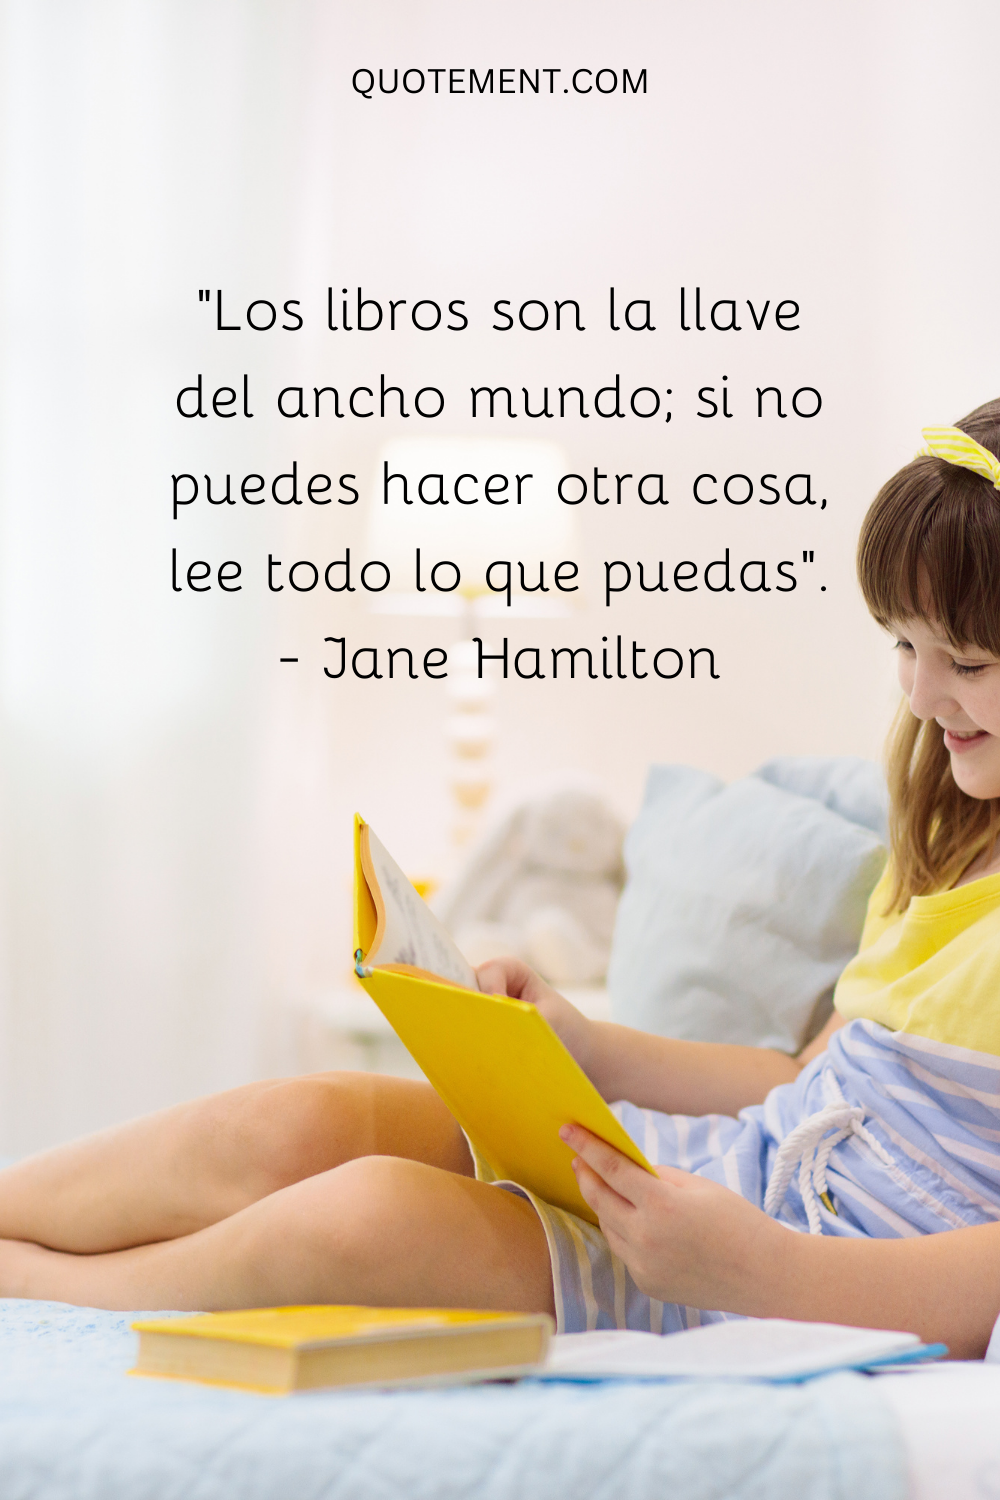 "Los libros son la llave del ancho mundo; si no puedes hacer otra cosa, lee todo lo que puedas". - Jane Hamilton